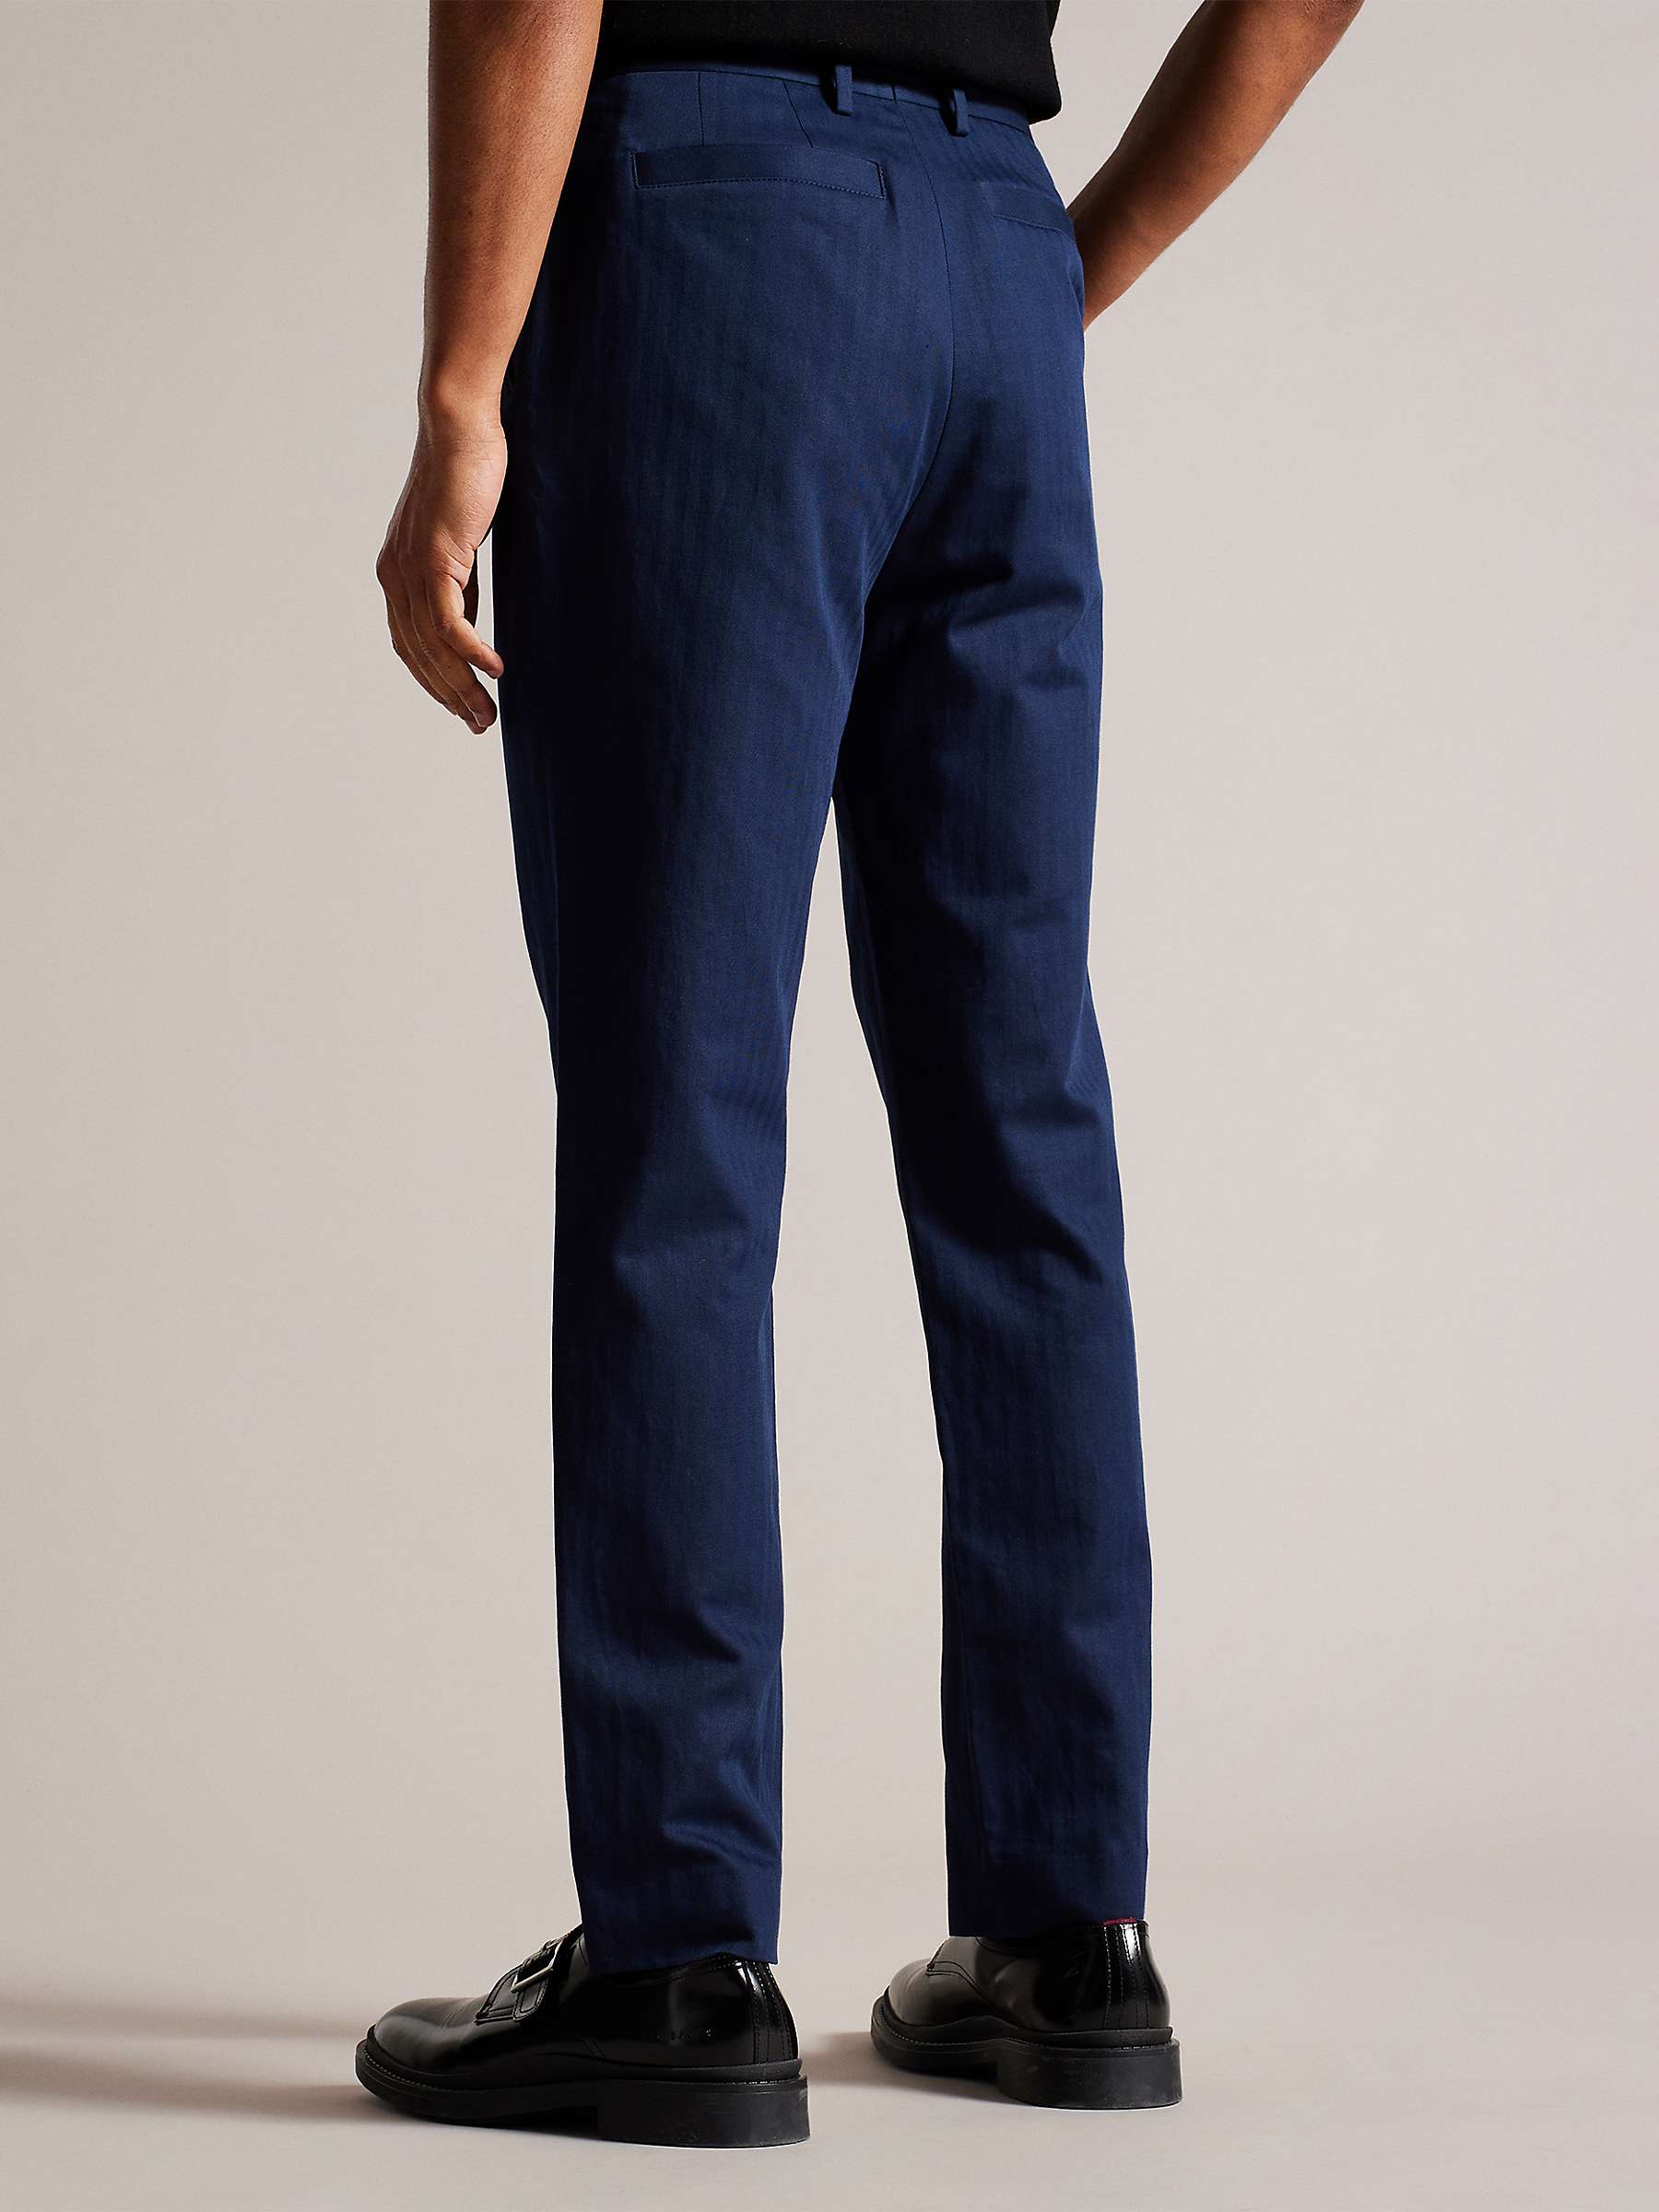 Buy Ted Baker Shakert Slim Fit Herringbone Trousers, Navy Online at johnlewis.com